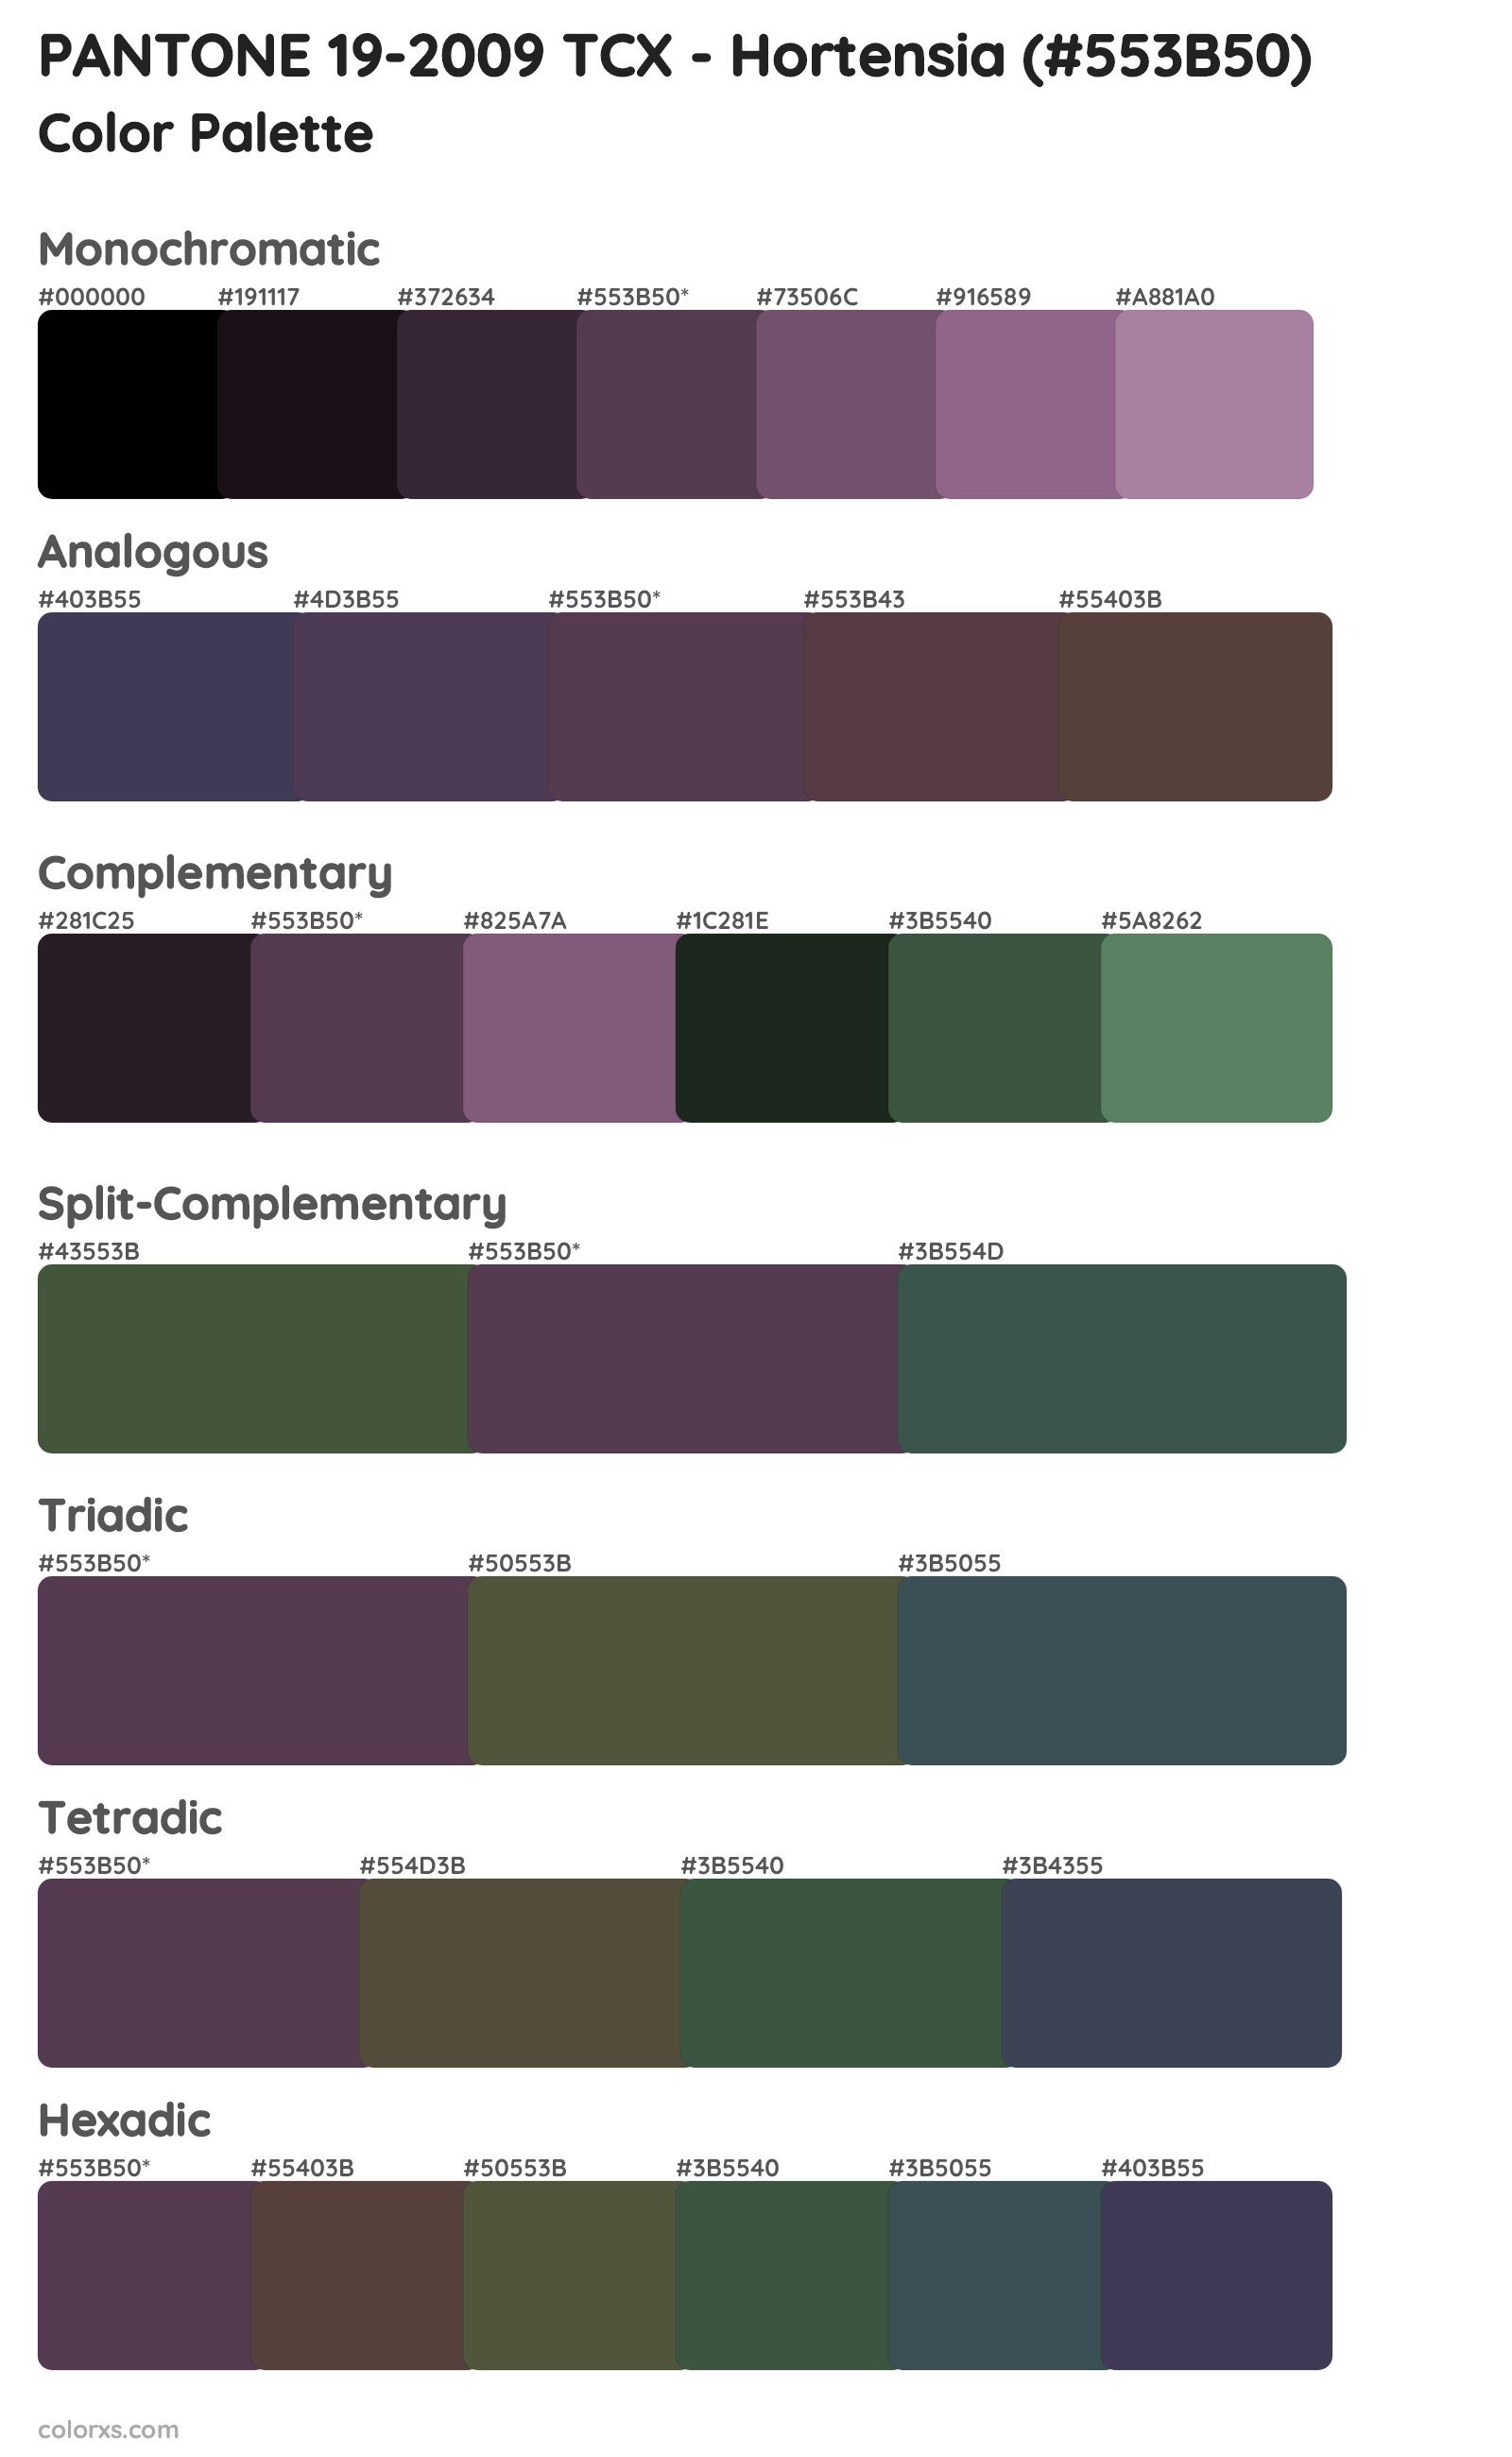 PANTONE 19-2009 TCX - Hortensia Color Scheme Palettes